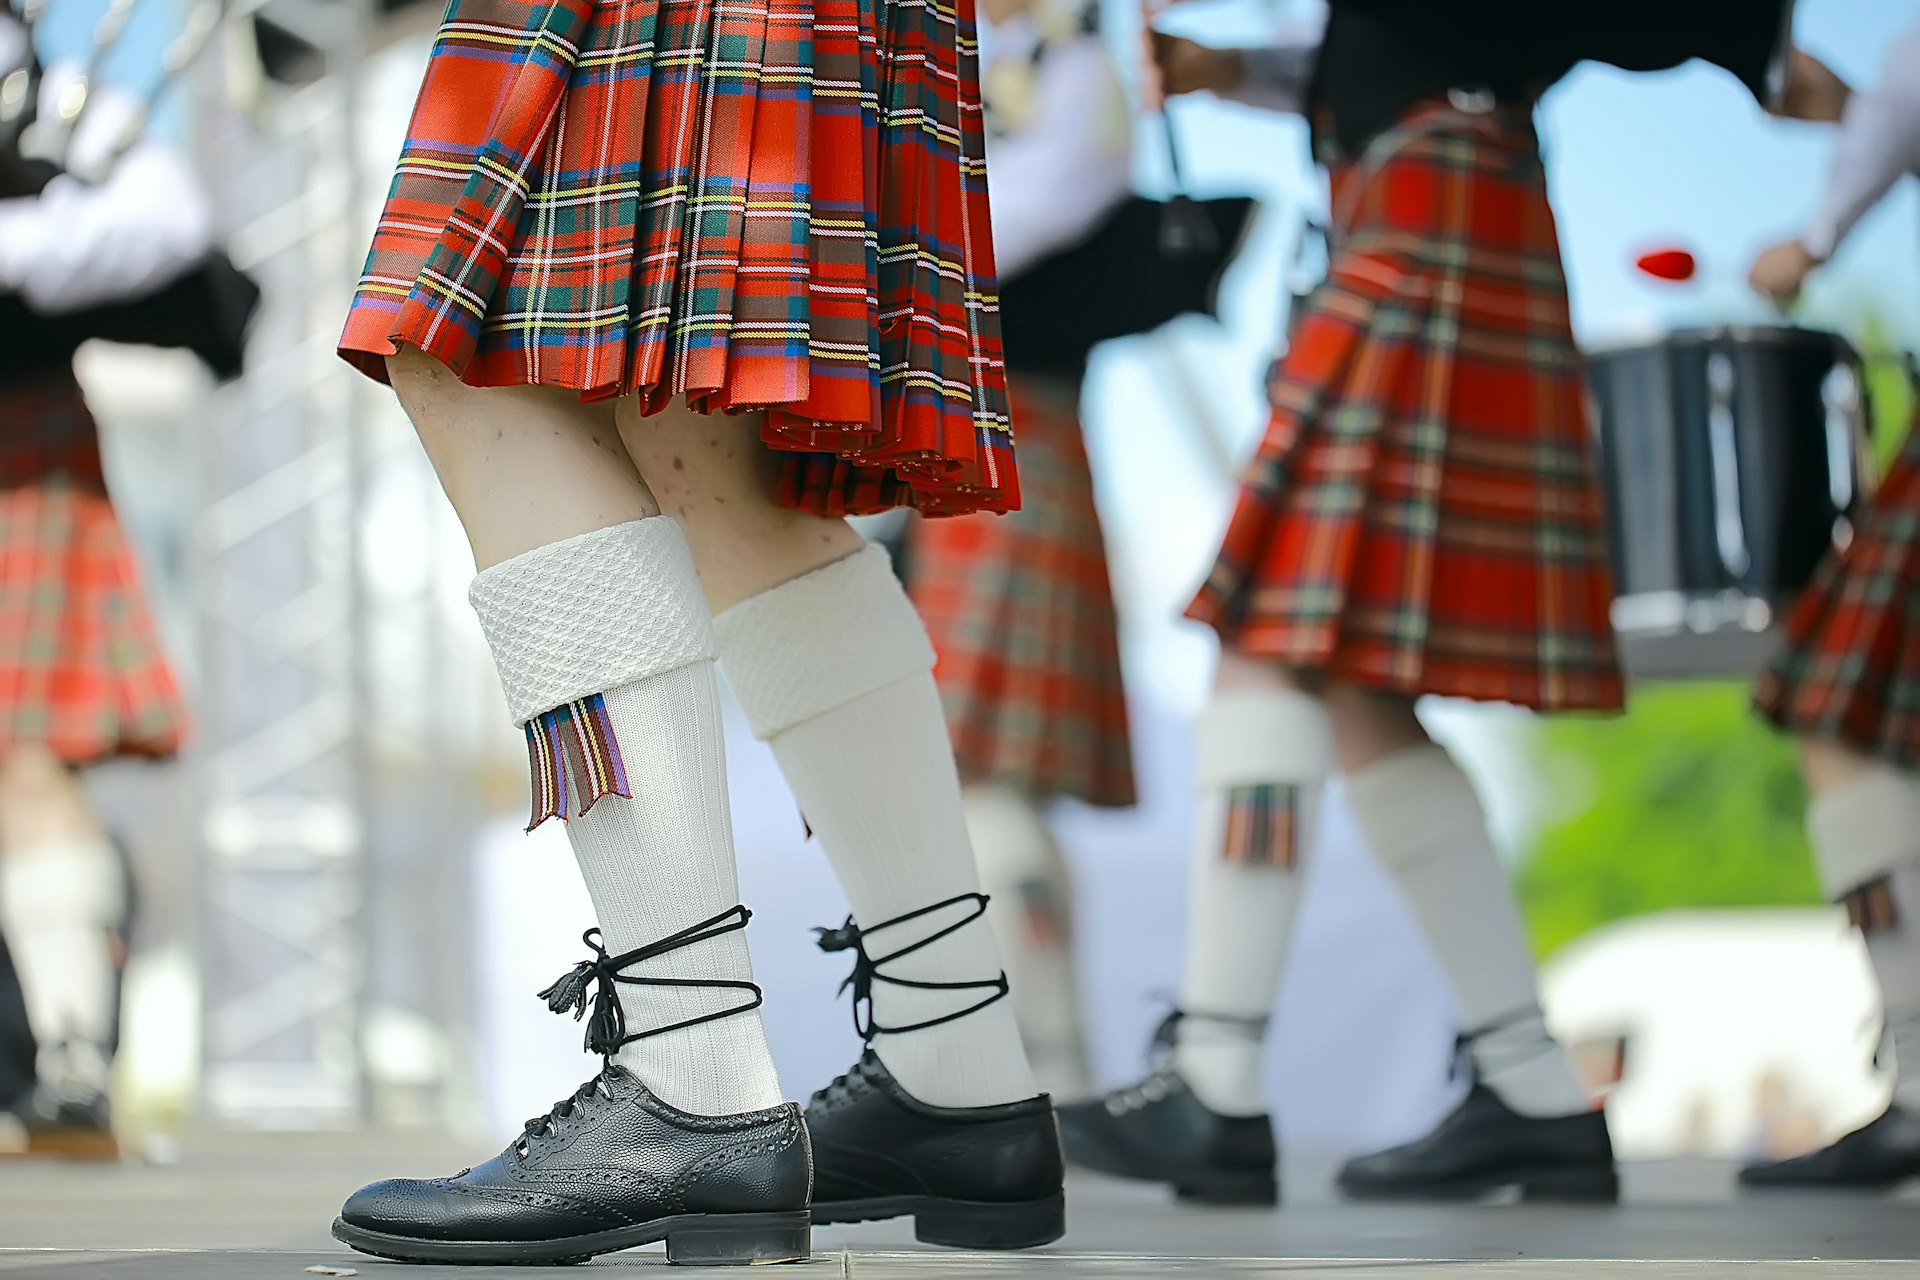 Legs and Scottish kilt-wearing men